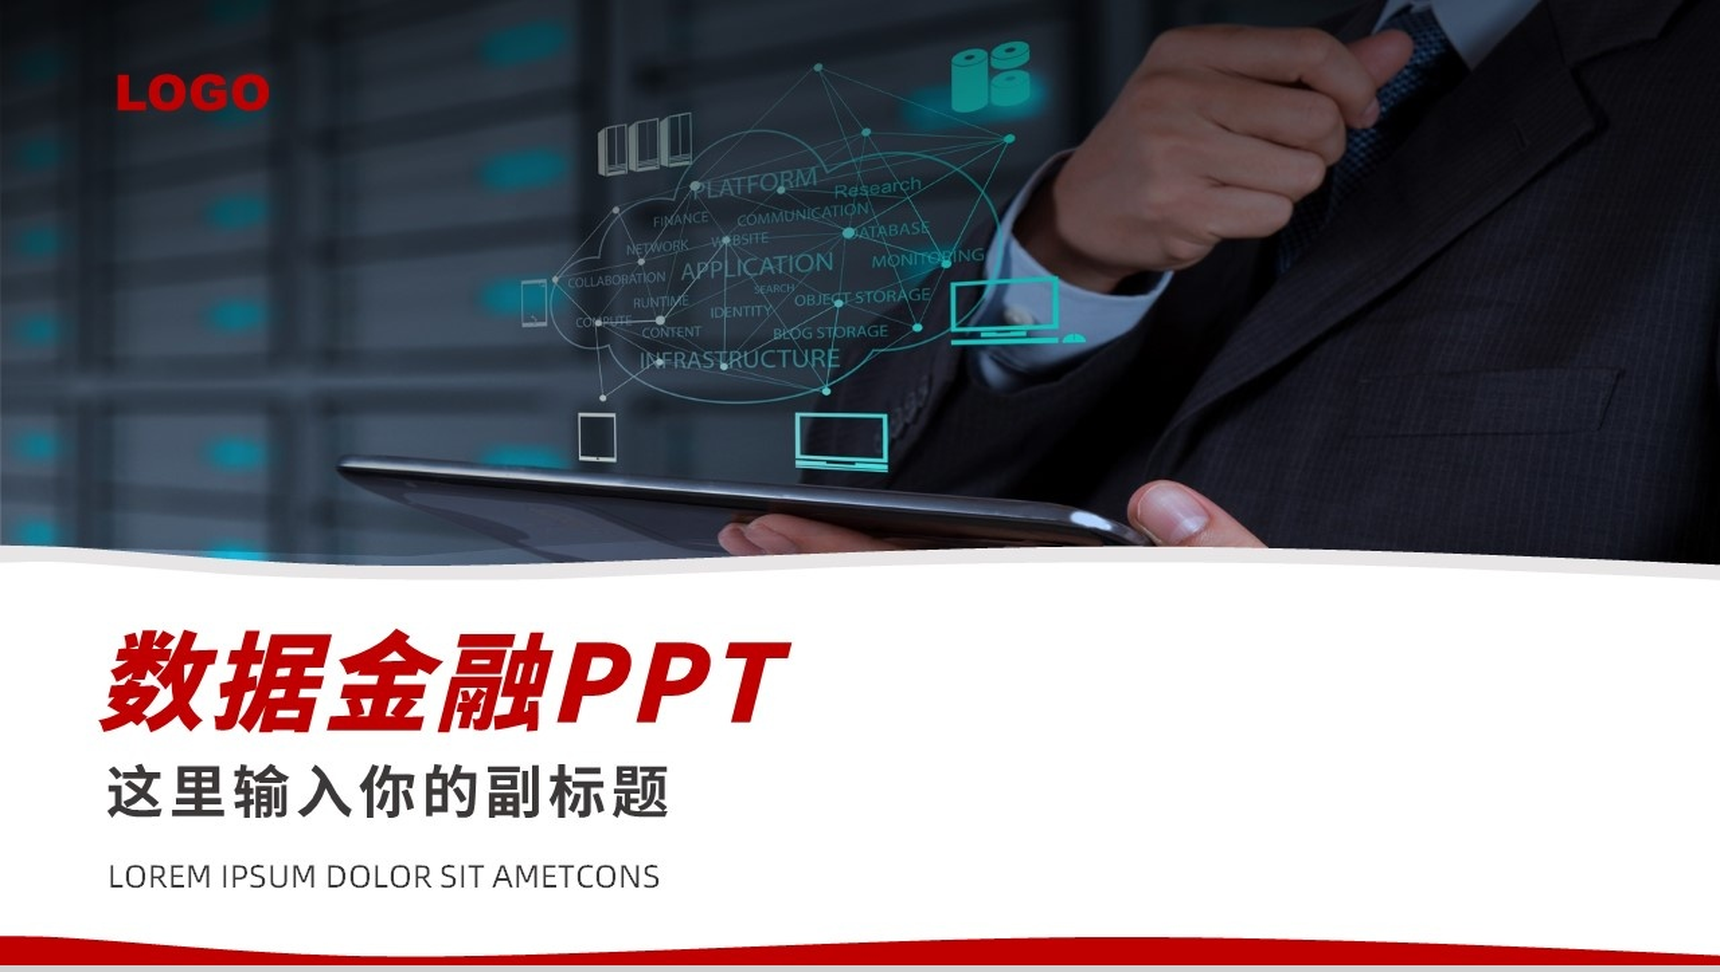 简单的公司介绍开场白文案数据金融管理PPT模板-10